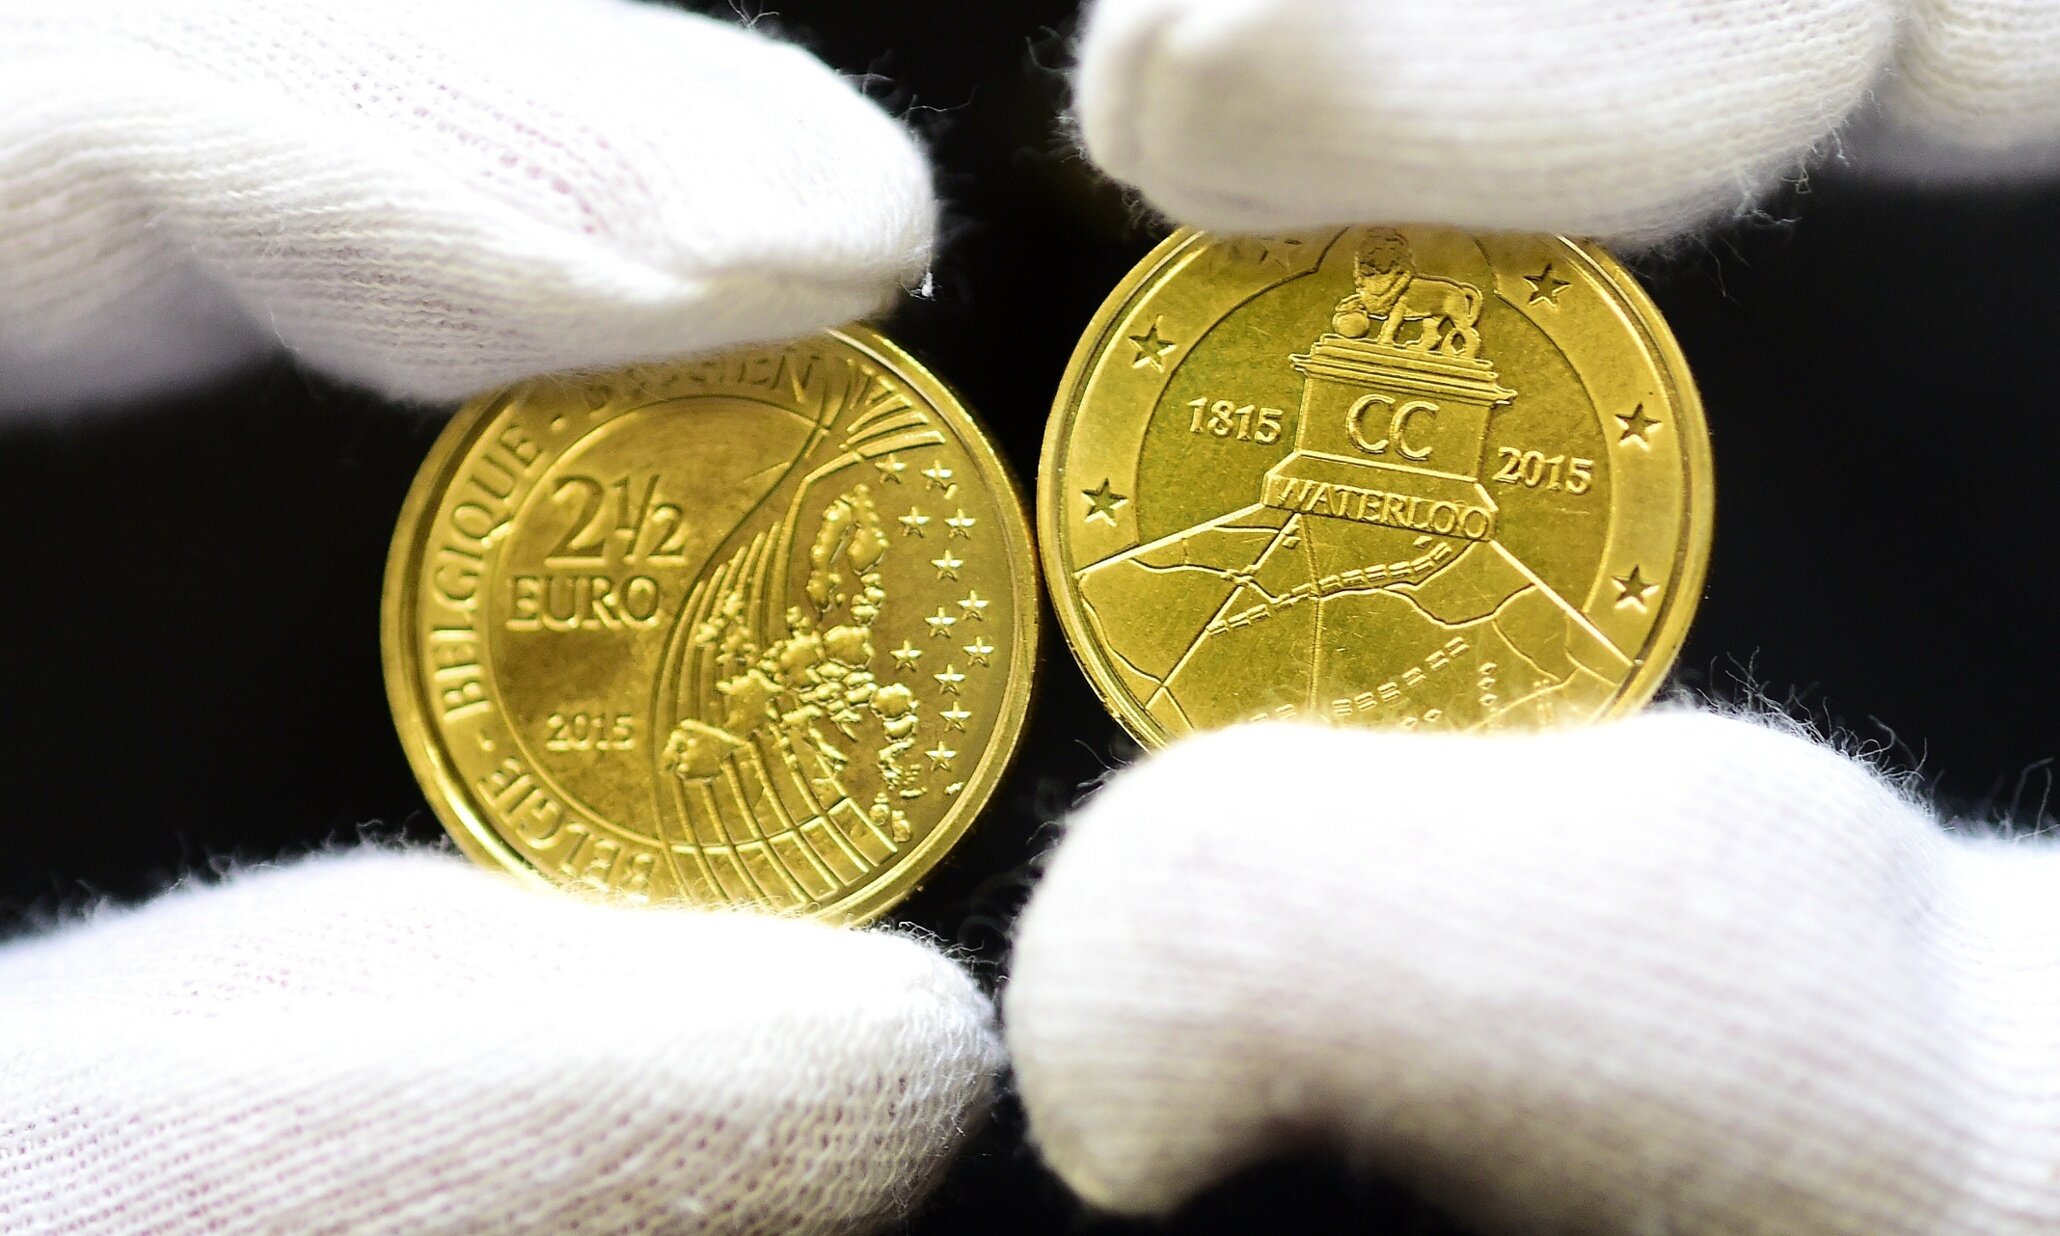 Belgium 2.5 Euro Coin